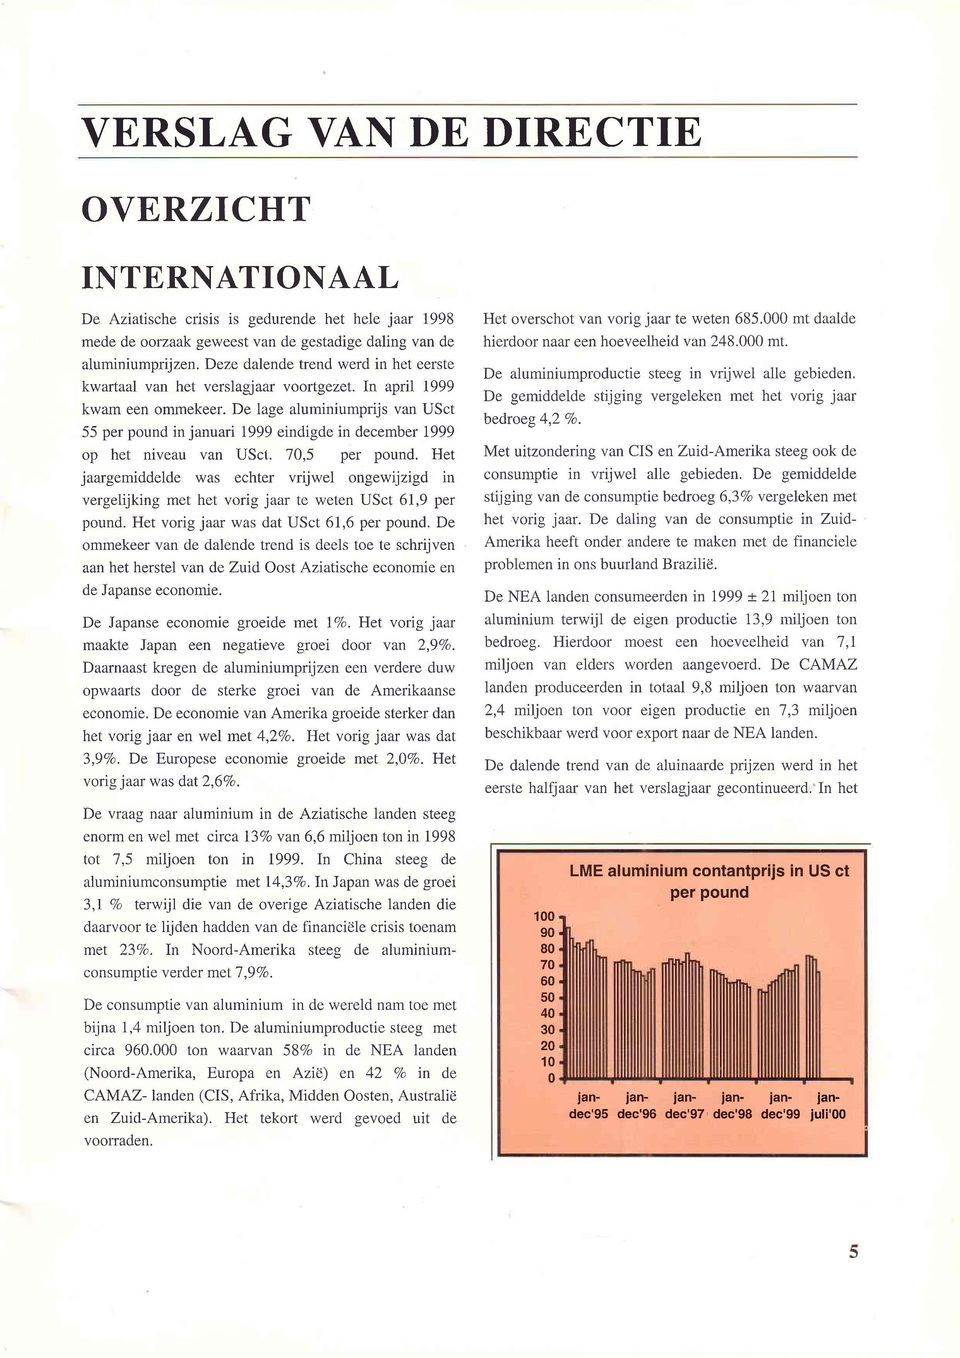 De lage aluminiumprijs van USct 55 per pound injanuari 1999 eindigde in december 1999 op het niveau van USct. '7,5 per pound.